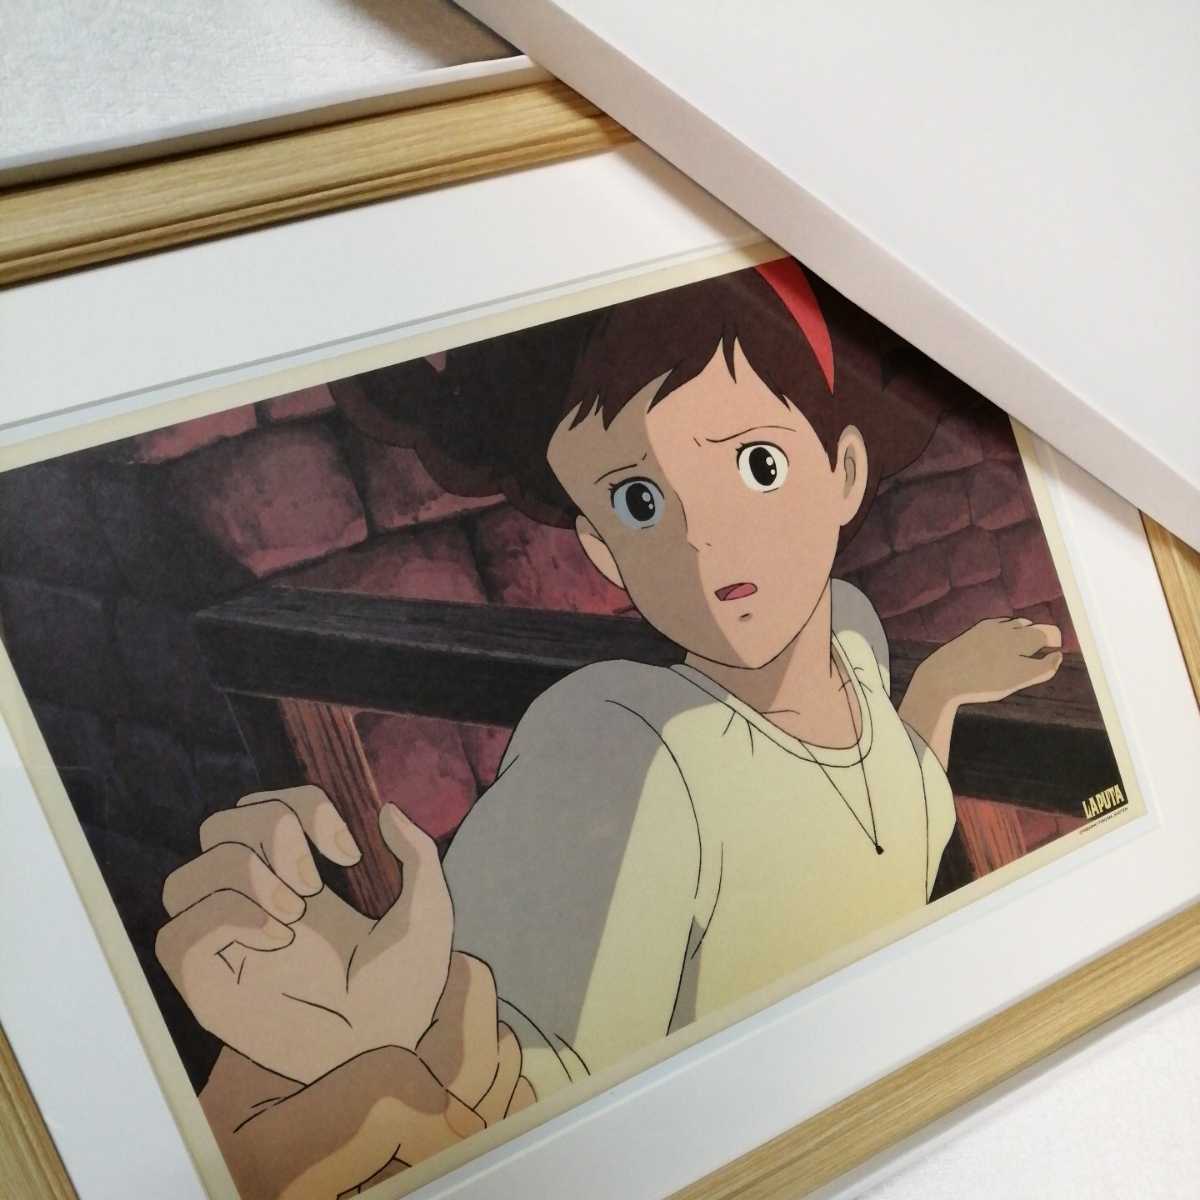 Vor mehr als 30 Jahren [Damals] Studio Ghibli: Castle in the Sky [Gerahmter Artikel] Poster, Wandbehanggemälde, Originalreproduktion, Inspektion) Zelle, Postkarte, Hayao Miyazaki a, Comics, Anime-Waren, Andere